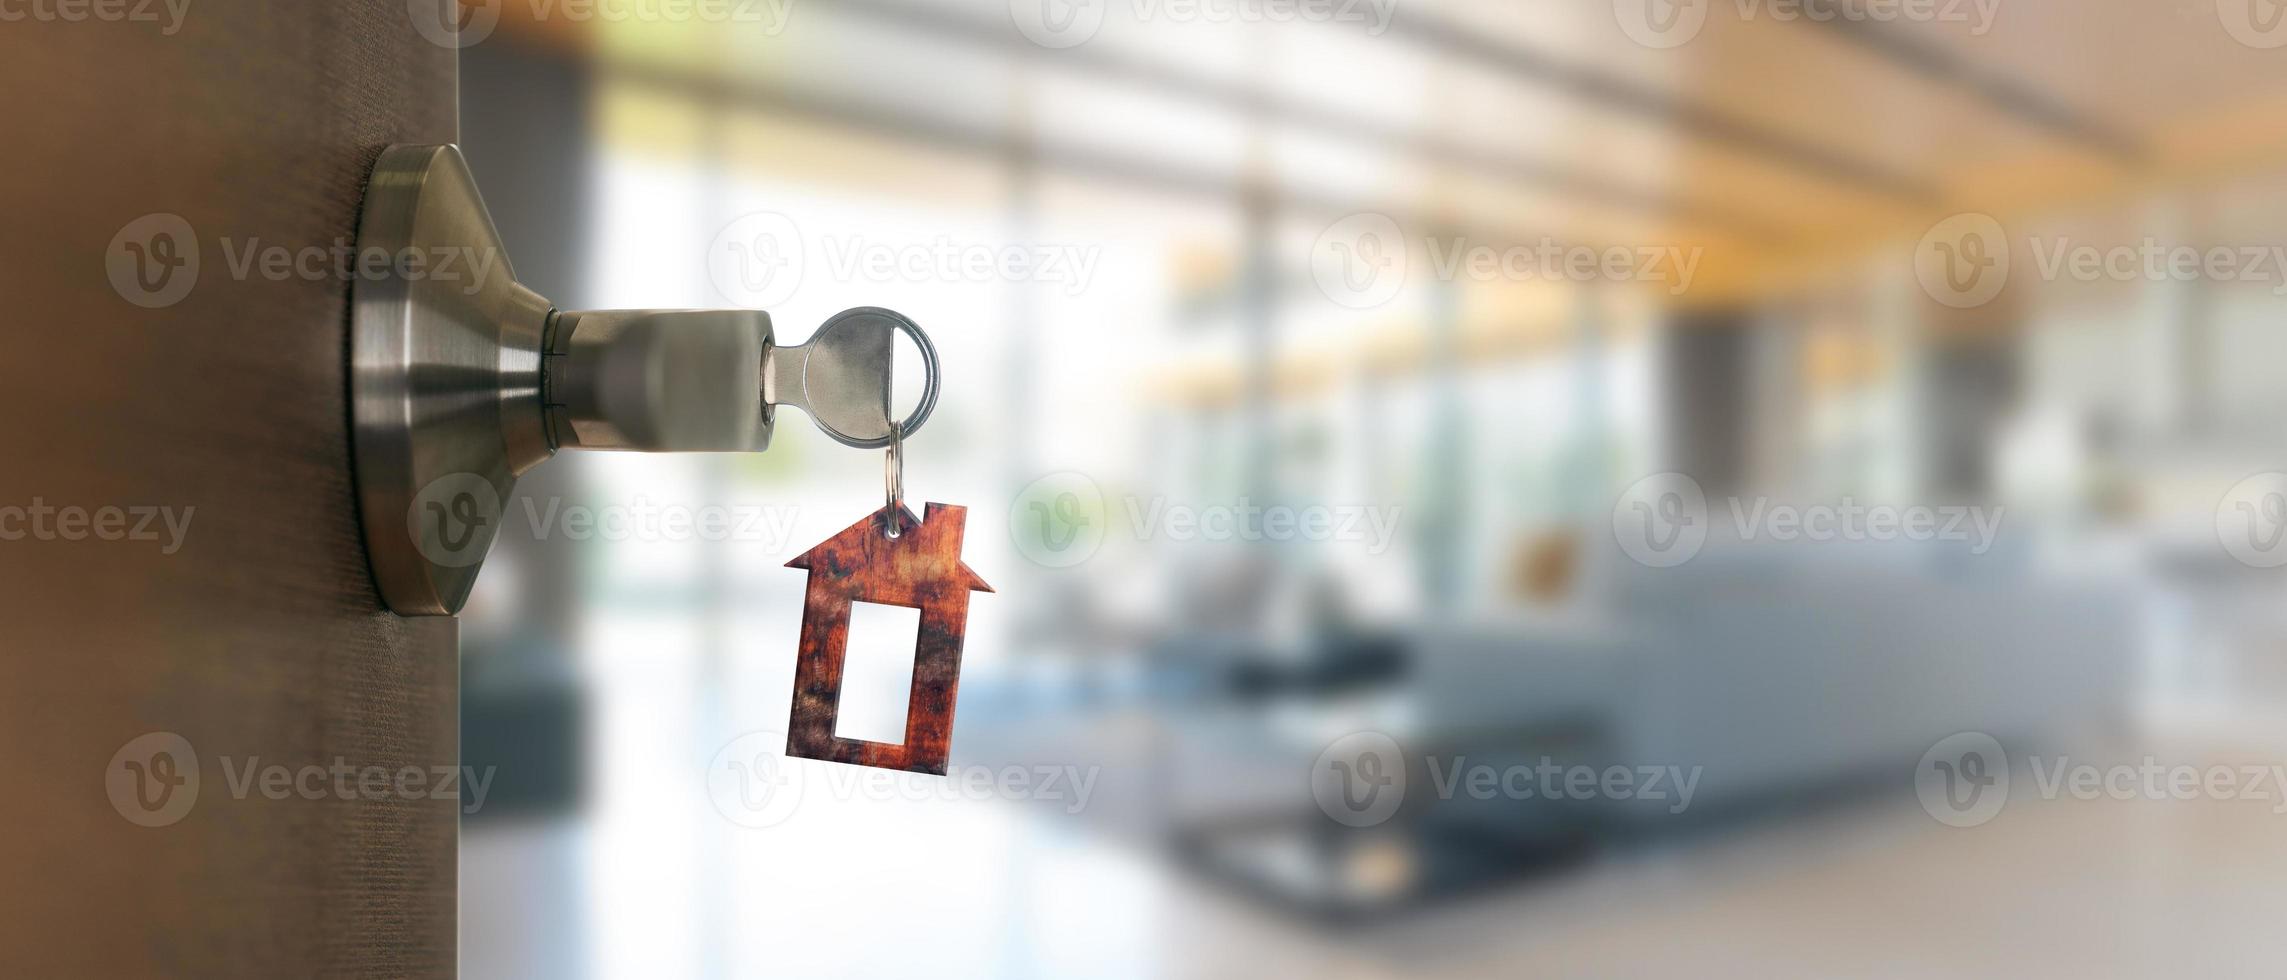 offene Tür zu Hause mit Schlüssel im Schlüsselloch, neues Wohnkonzept foto